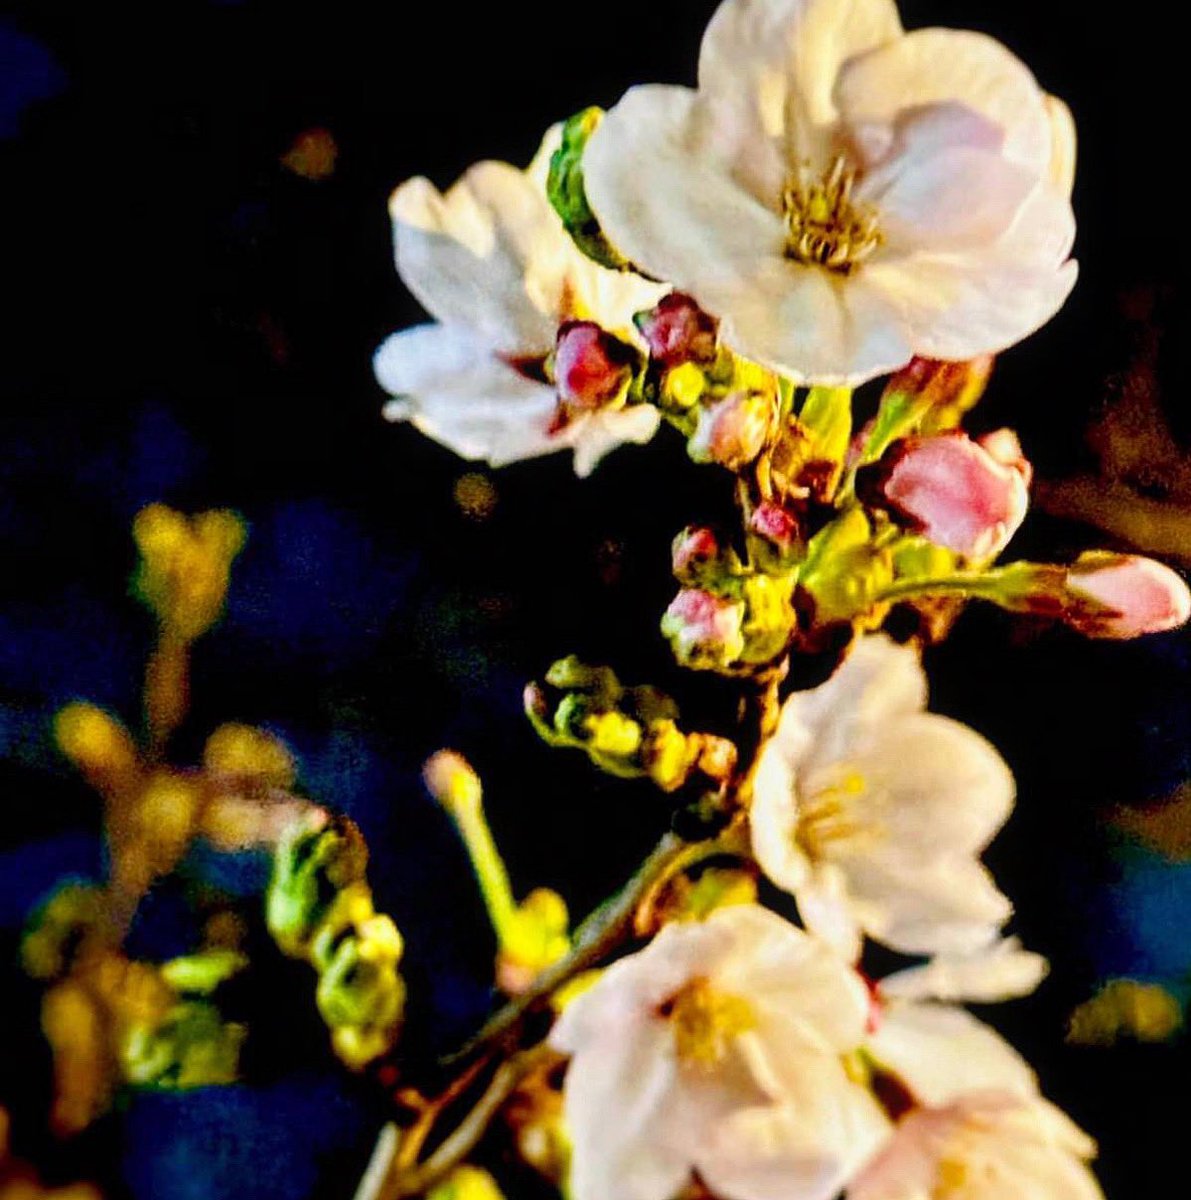 おはようございます💕 今日も☔️ですね 年度末の会社さんも多いですか⁉️ 桜が綻び始めましたね🌸 おともだちが撮った #錦糸町公園 の桜です🌸 美しい‼️ #おは戦60329mk #企業公式が毎朝地元の天気を言い合う #企業公式相互フォロー